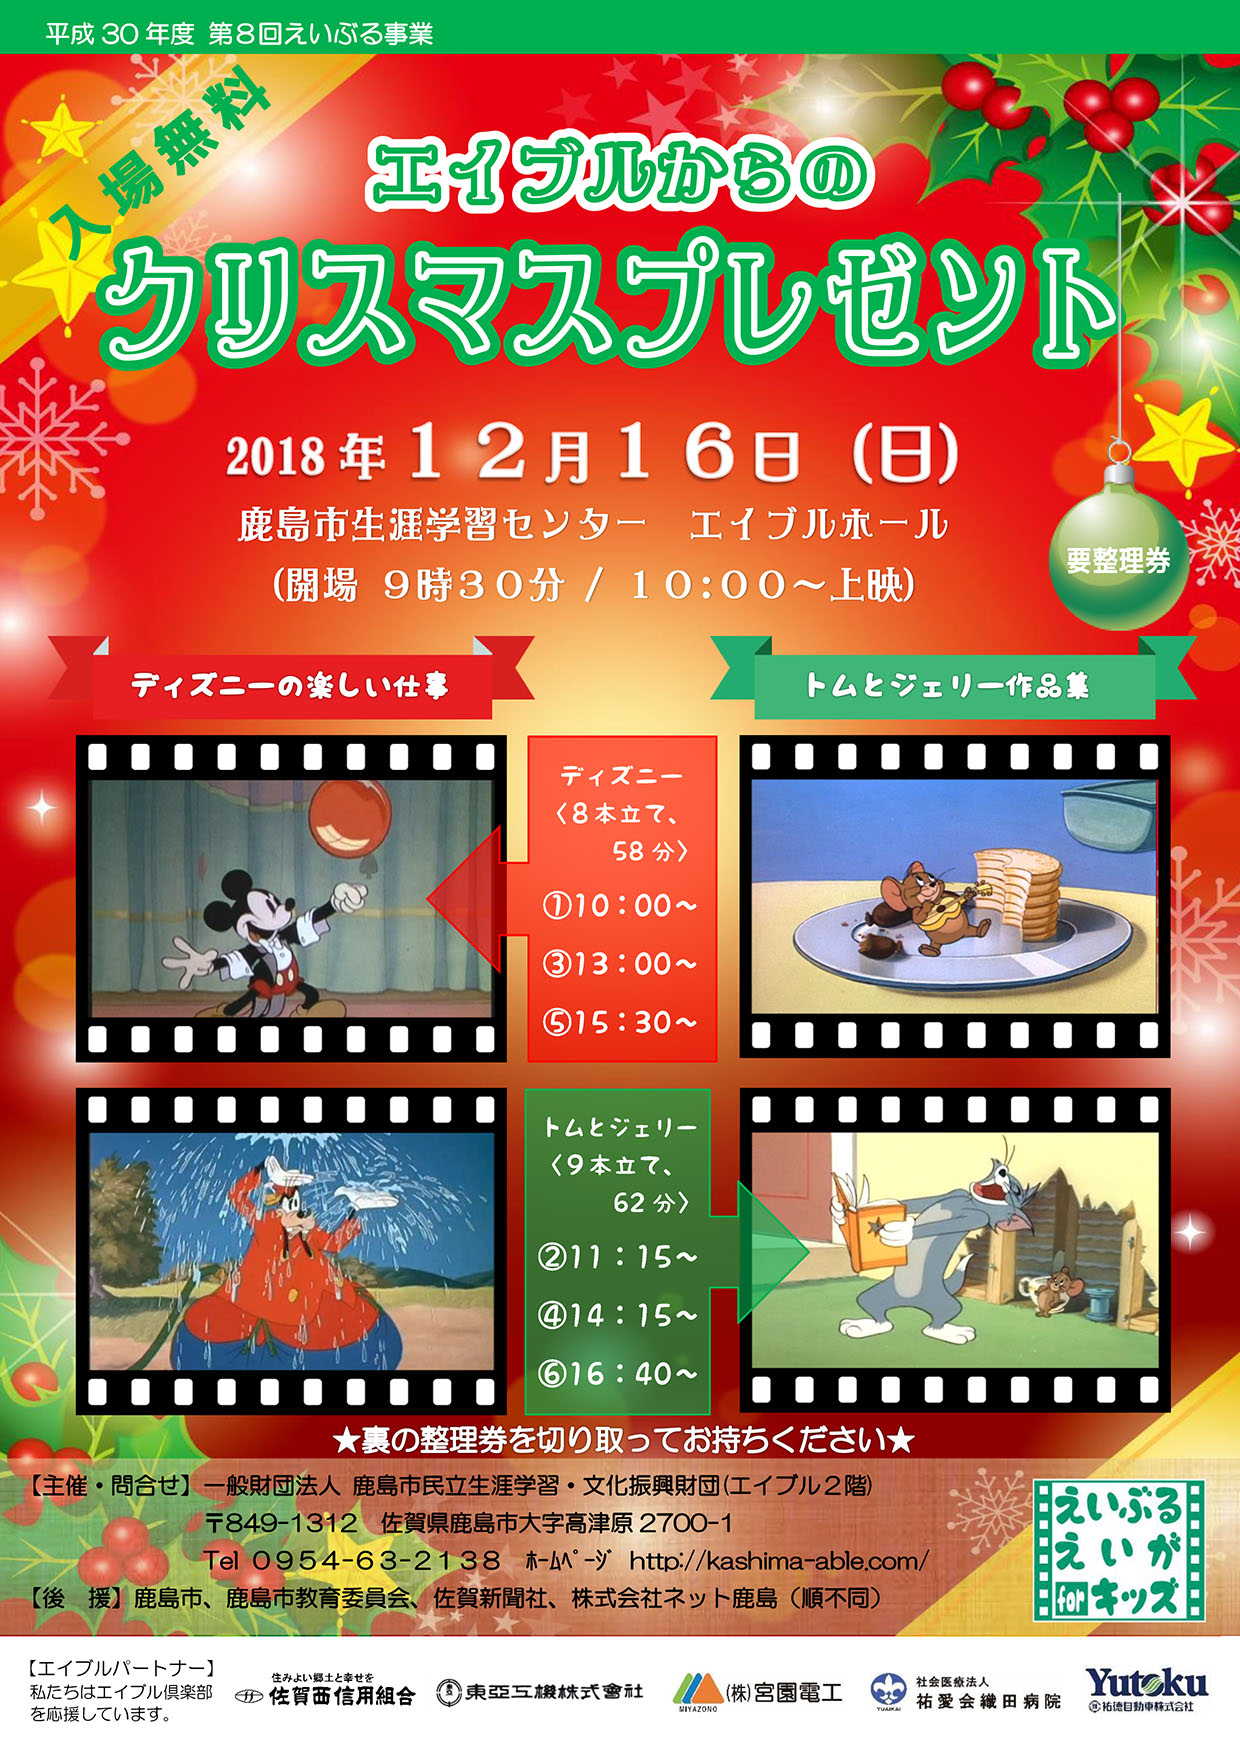 鹿島 12月16日 ディズニーやトムとジェリーなど懐かしの短編集を無料上映 クリップ九州